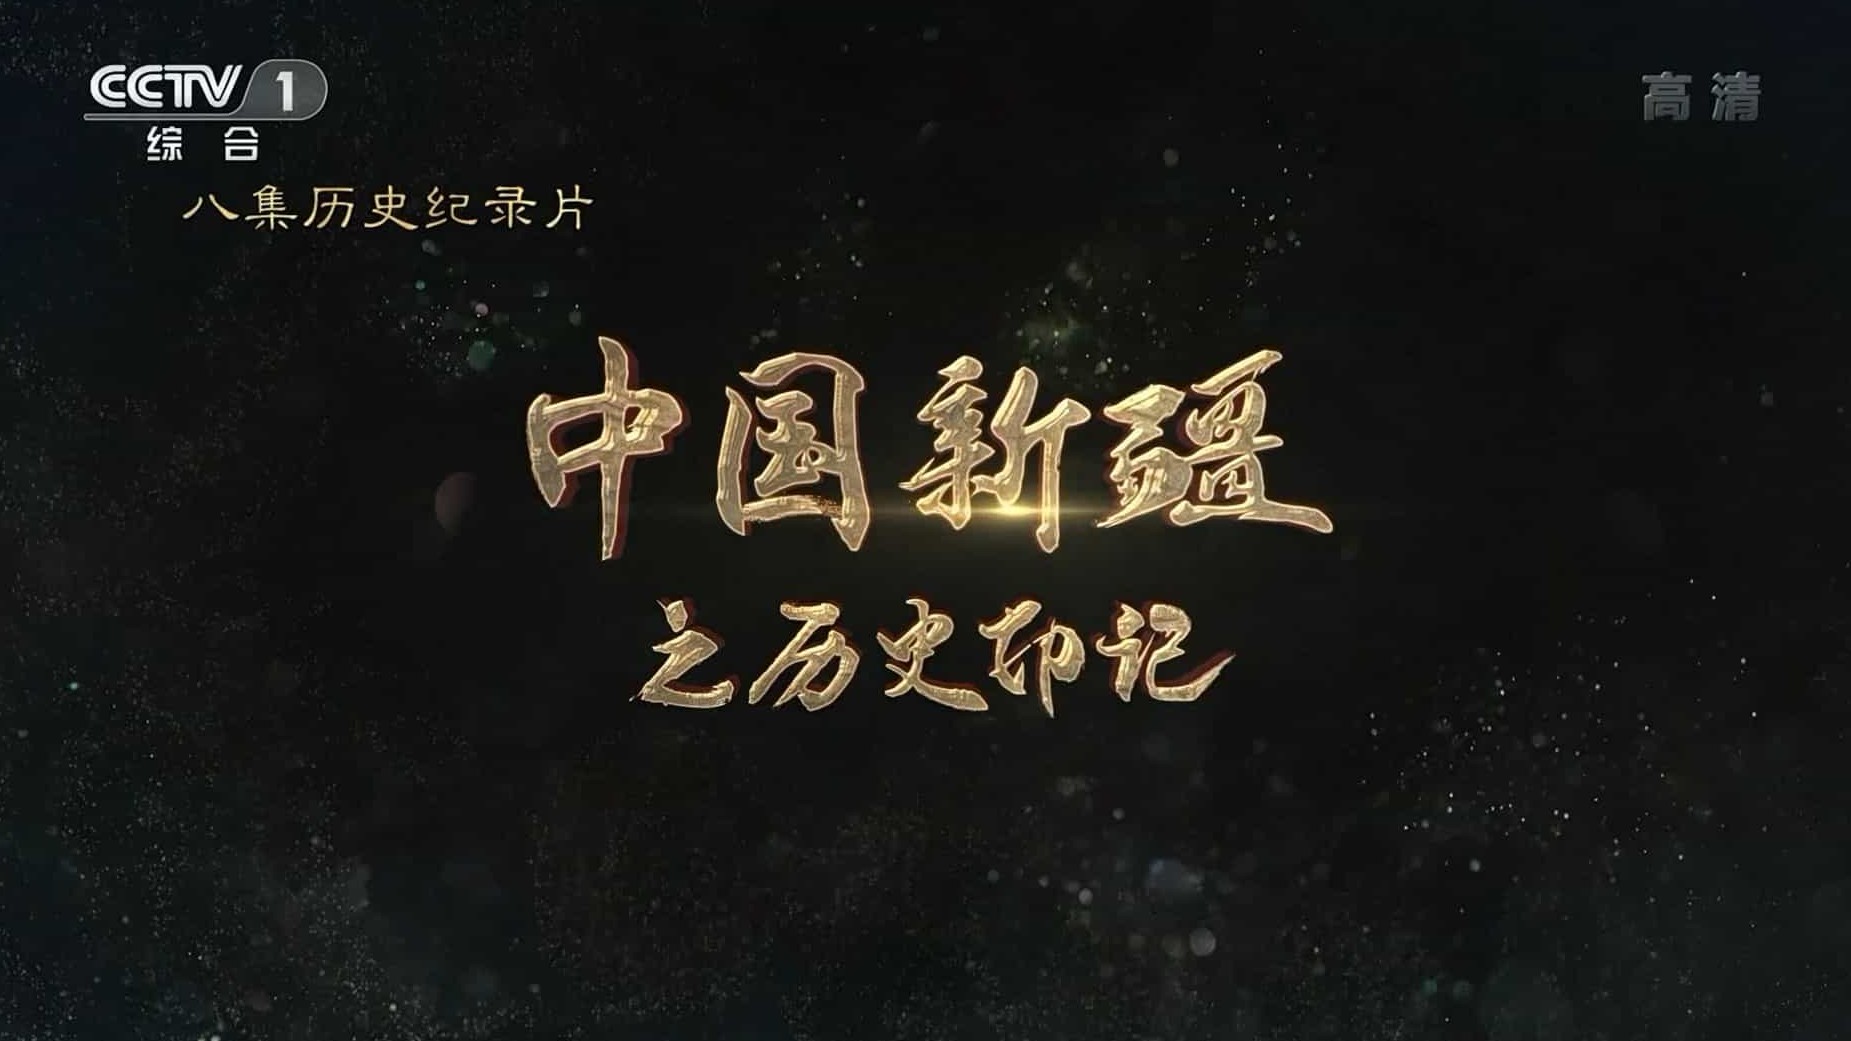 央视纪录片《中国新疆之历史印记 2021》全8集 国语中字 1080i高清下载